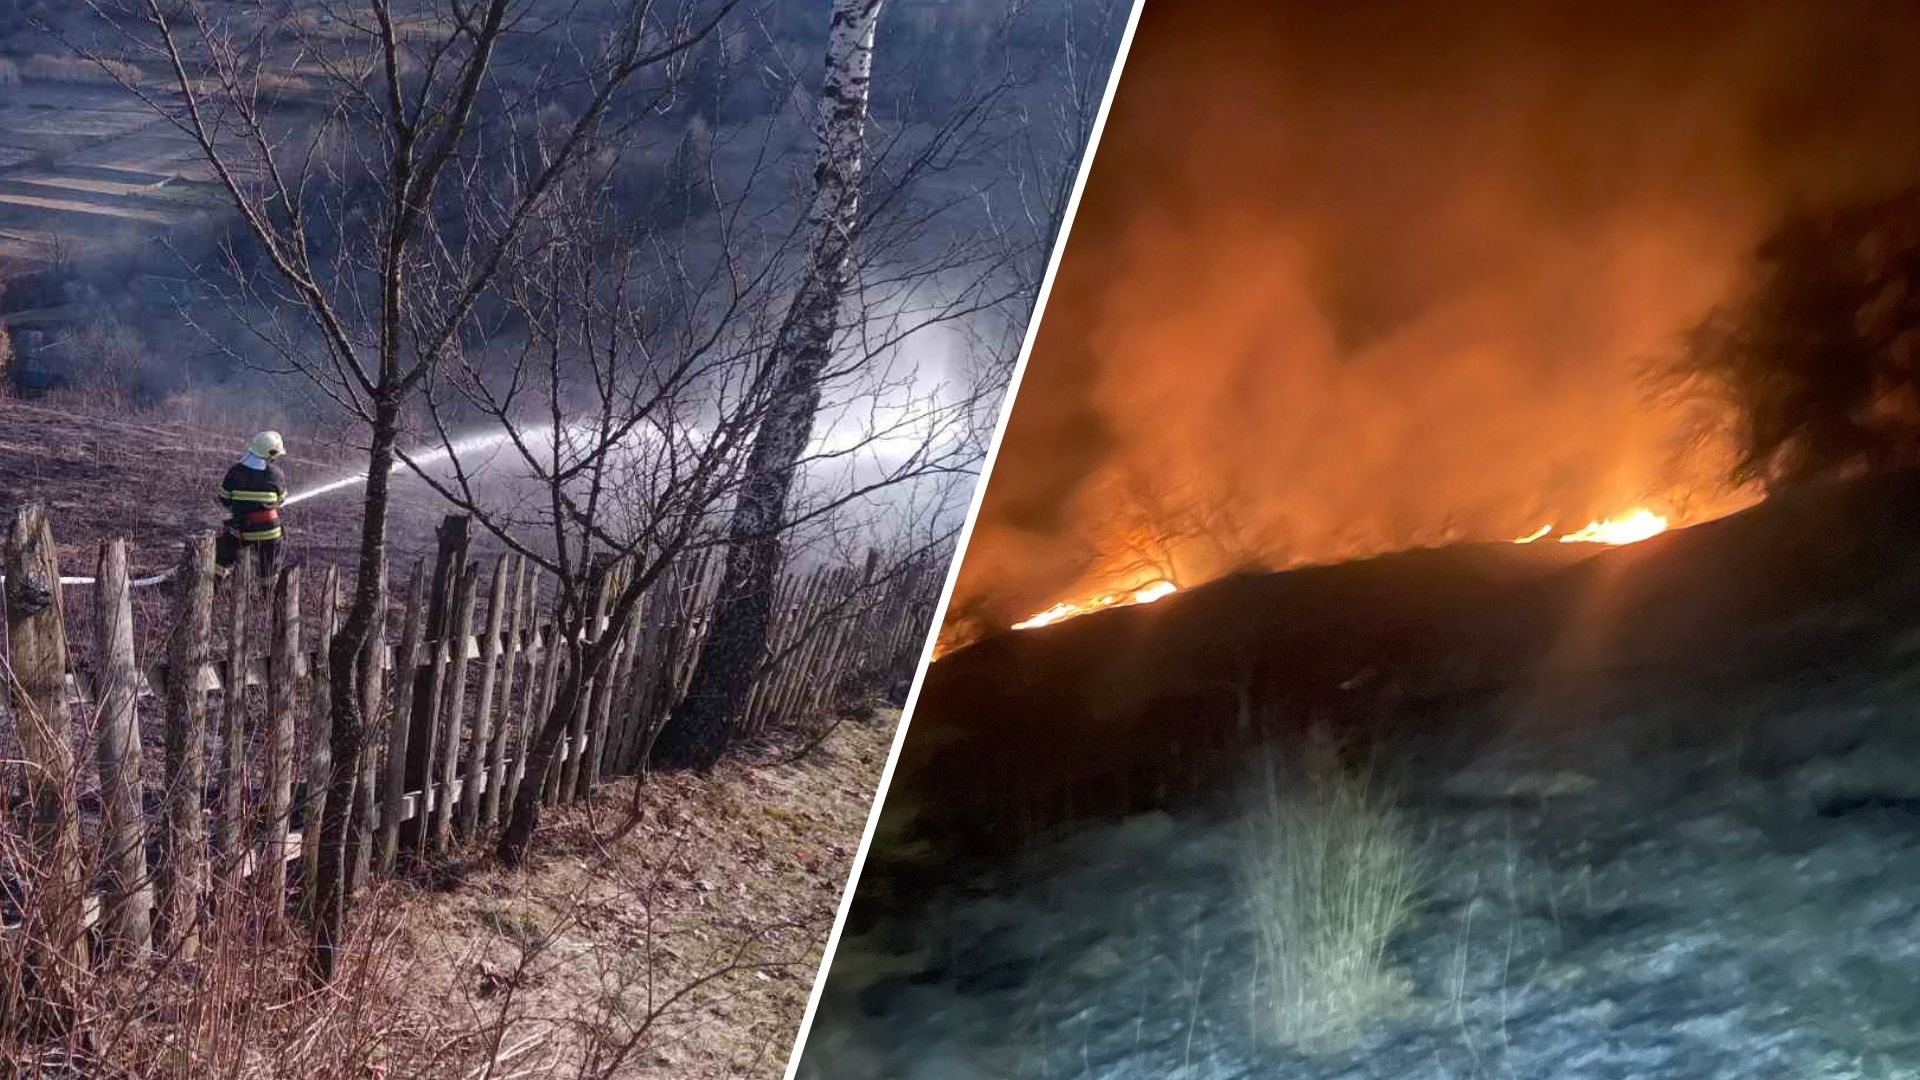 В этот день во всех районах Закарпатья, кроме Раховщины, горели и горели кусты. В результате площадь выжженной земли увеличилась на 6 гектаров. Всего в экосистемах зафиксировано 13 пожаров, что в процентном соотношении по сравнению с предыдущими выходными.